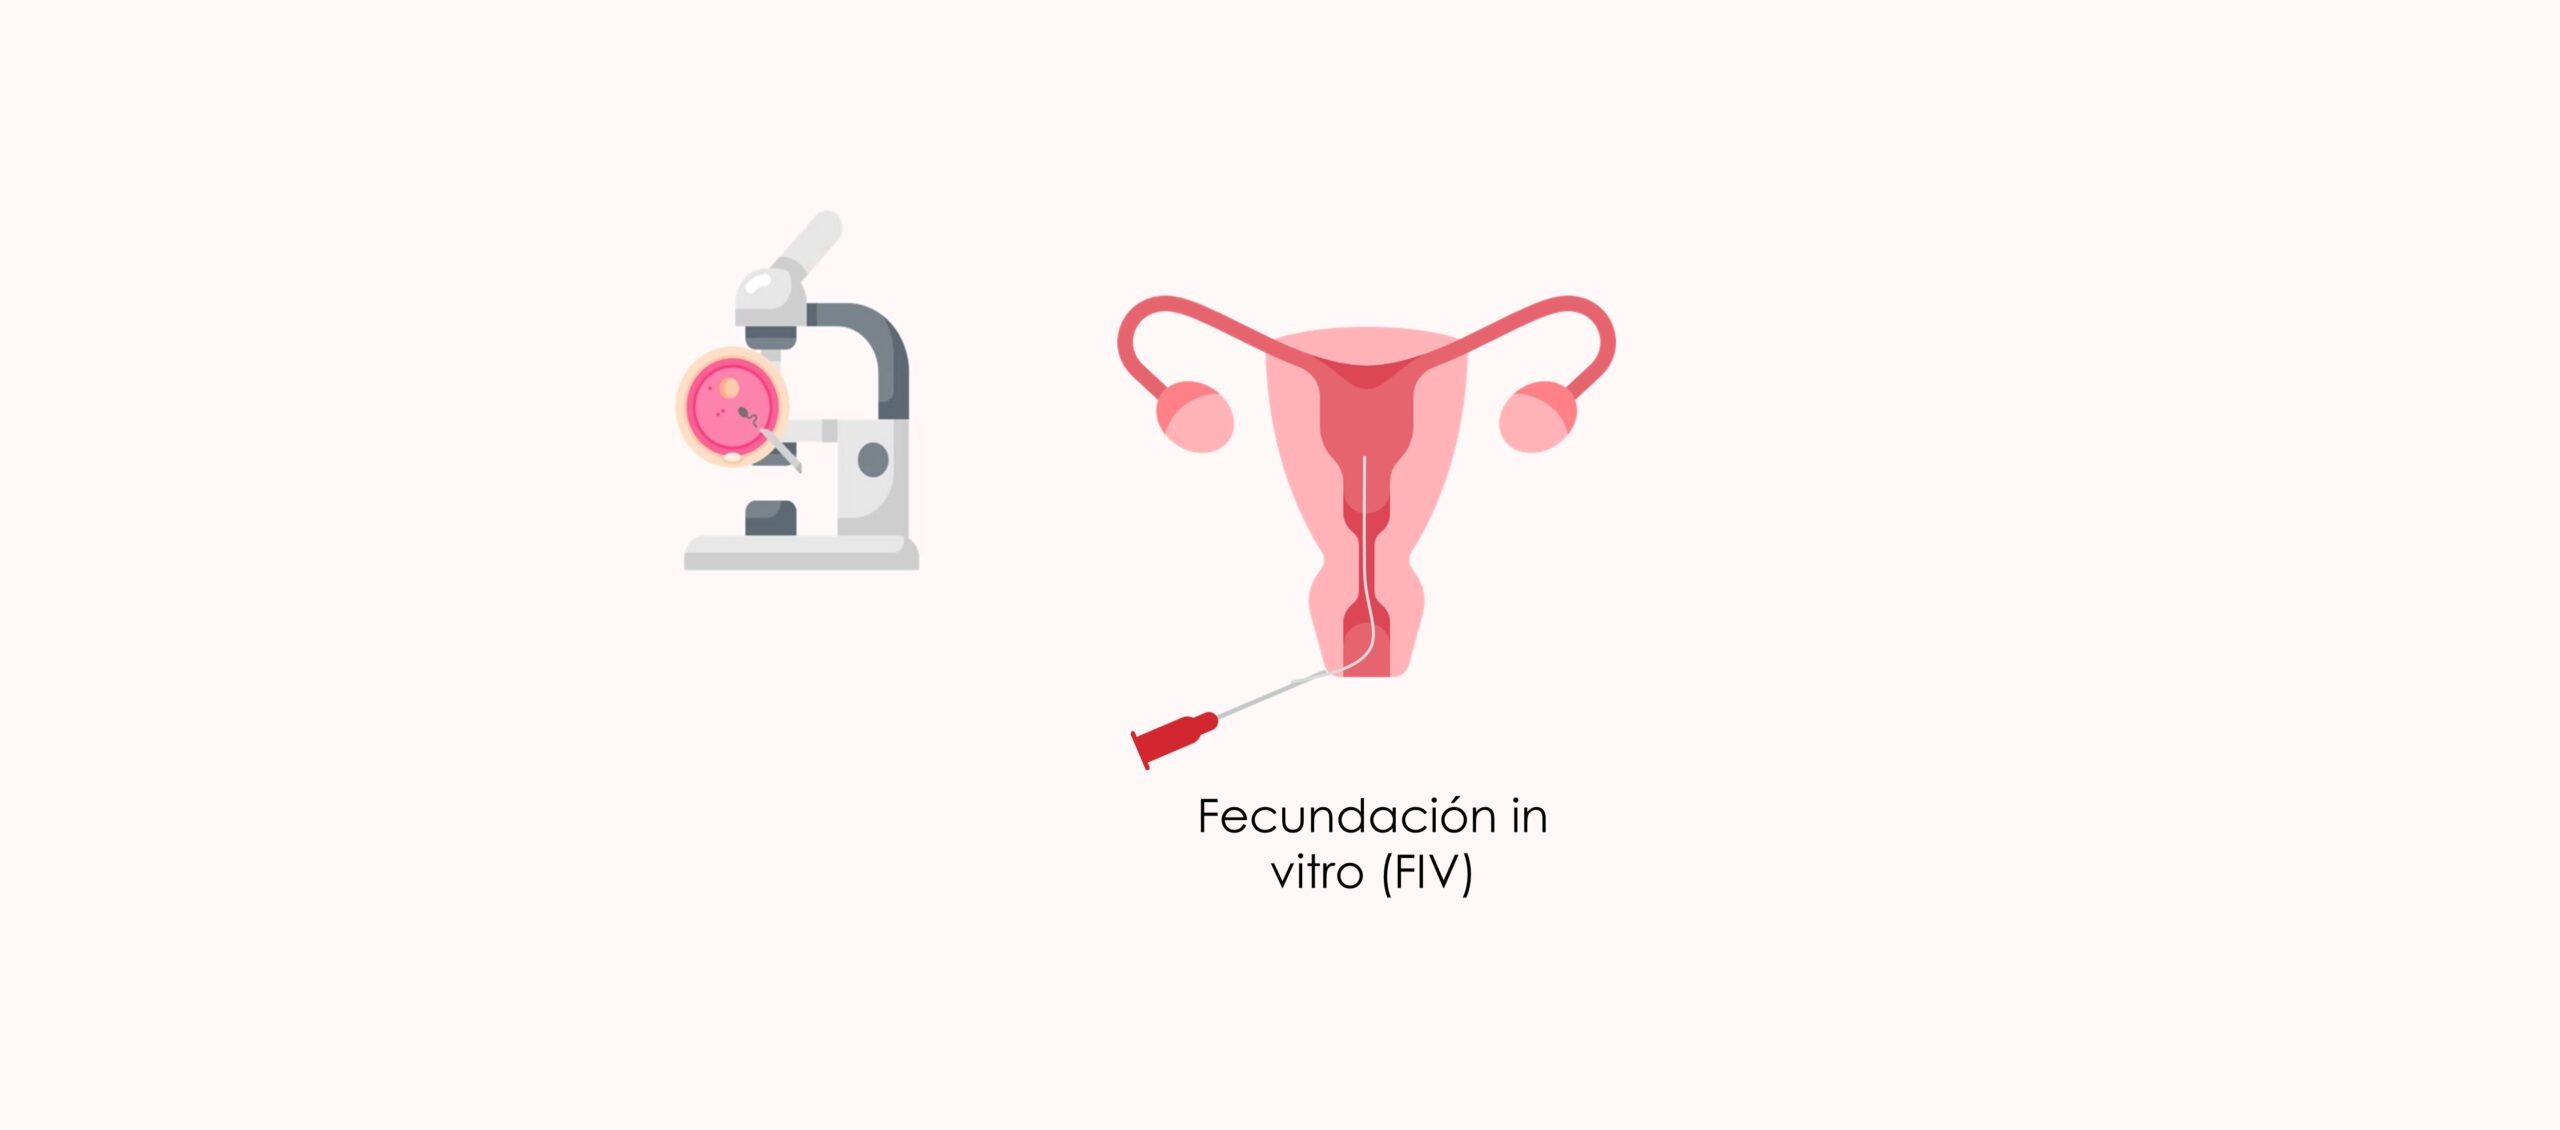 Fecundación in vitro (FIV)